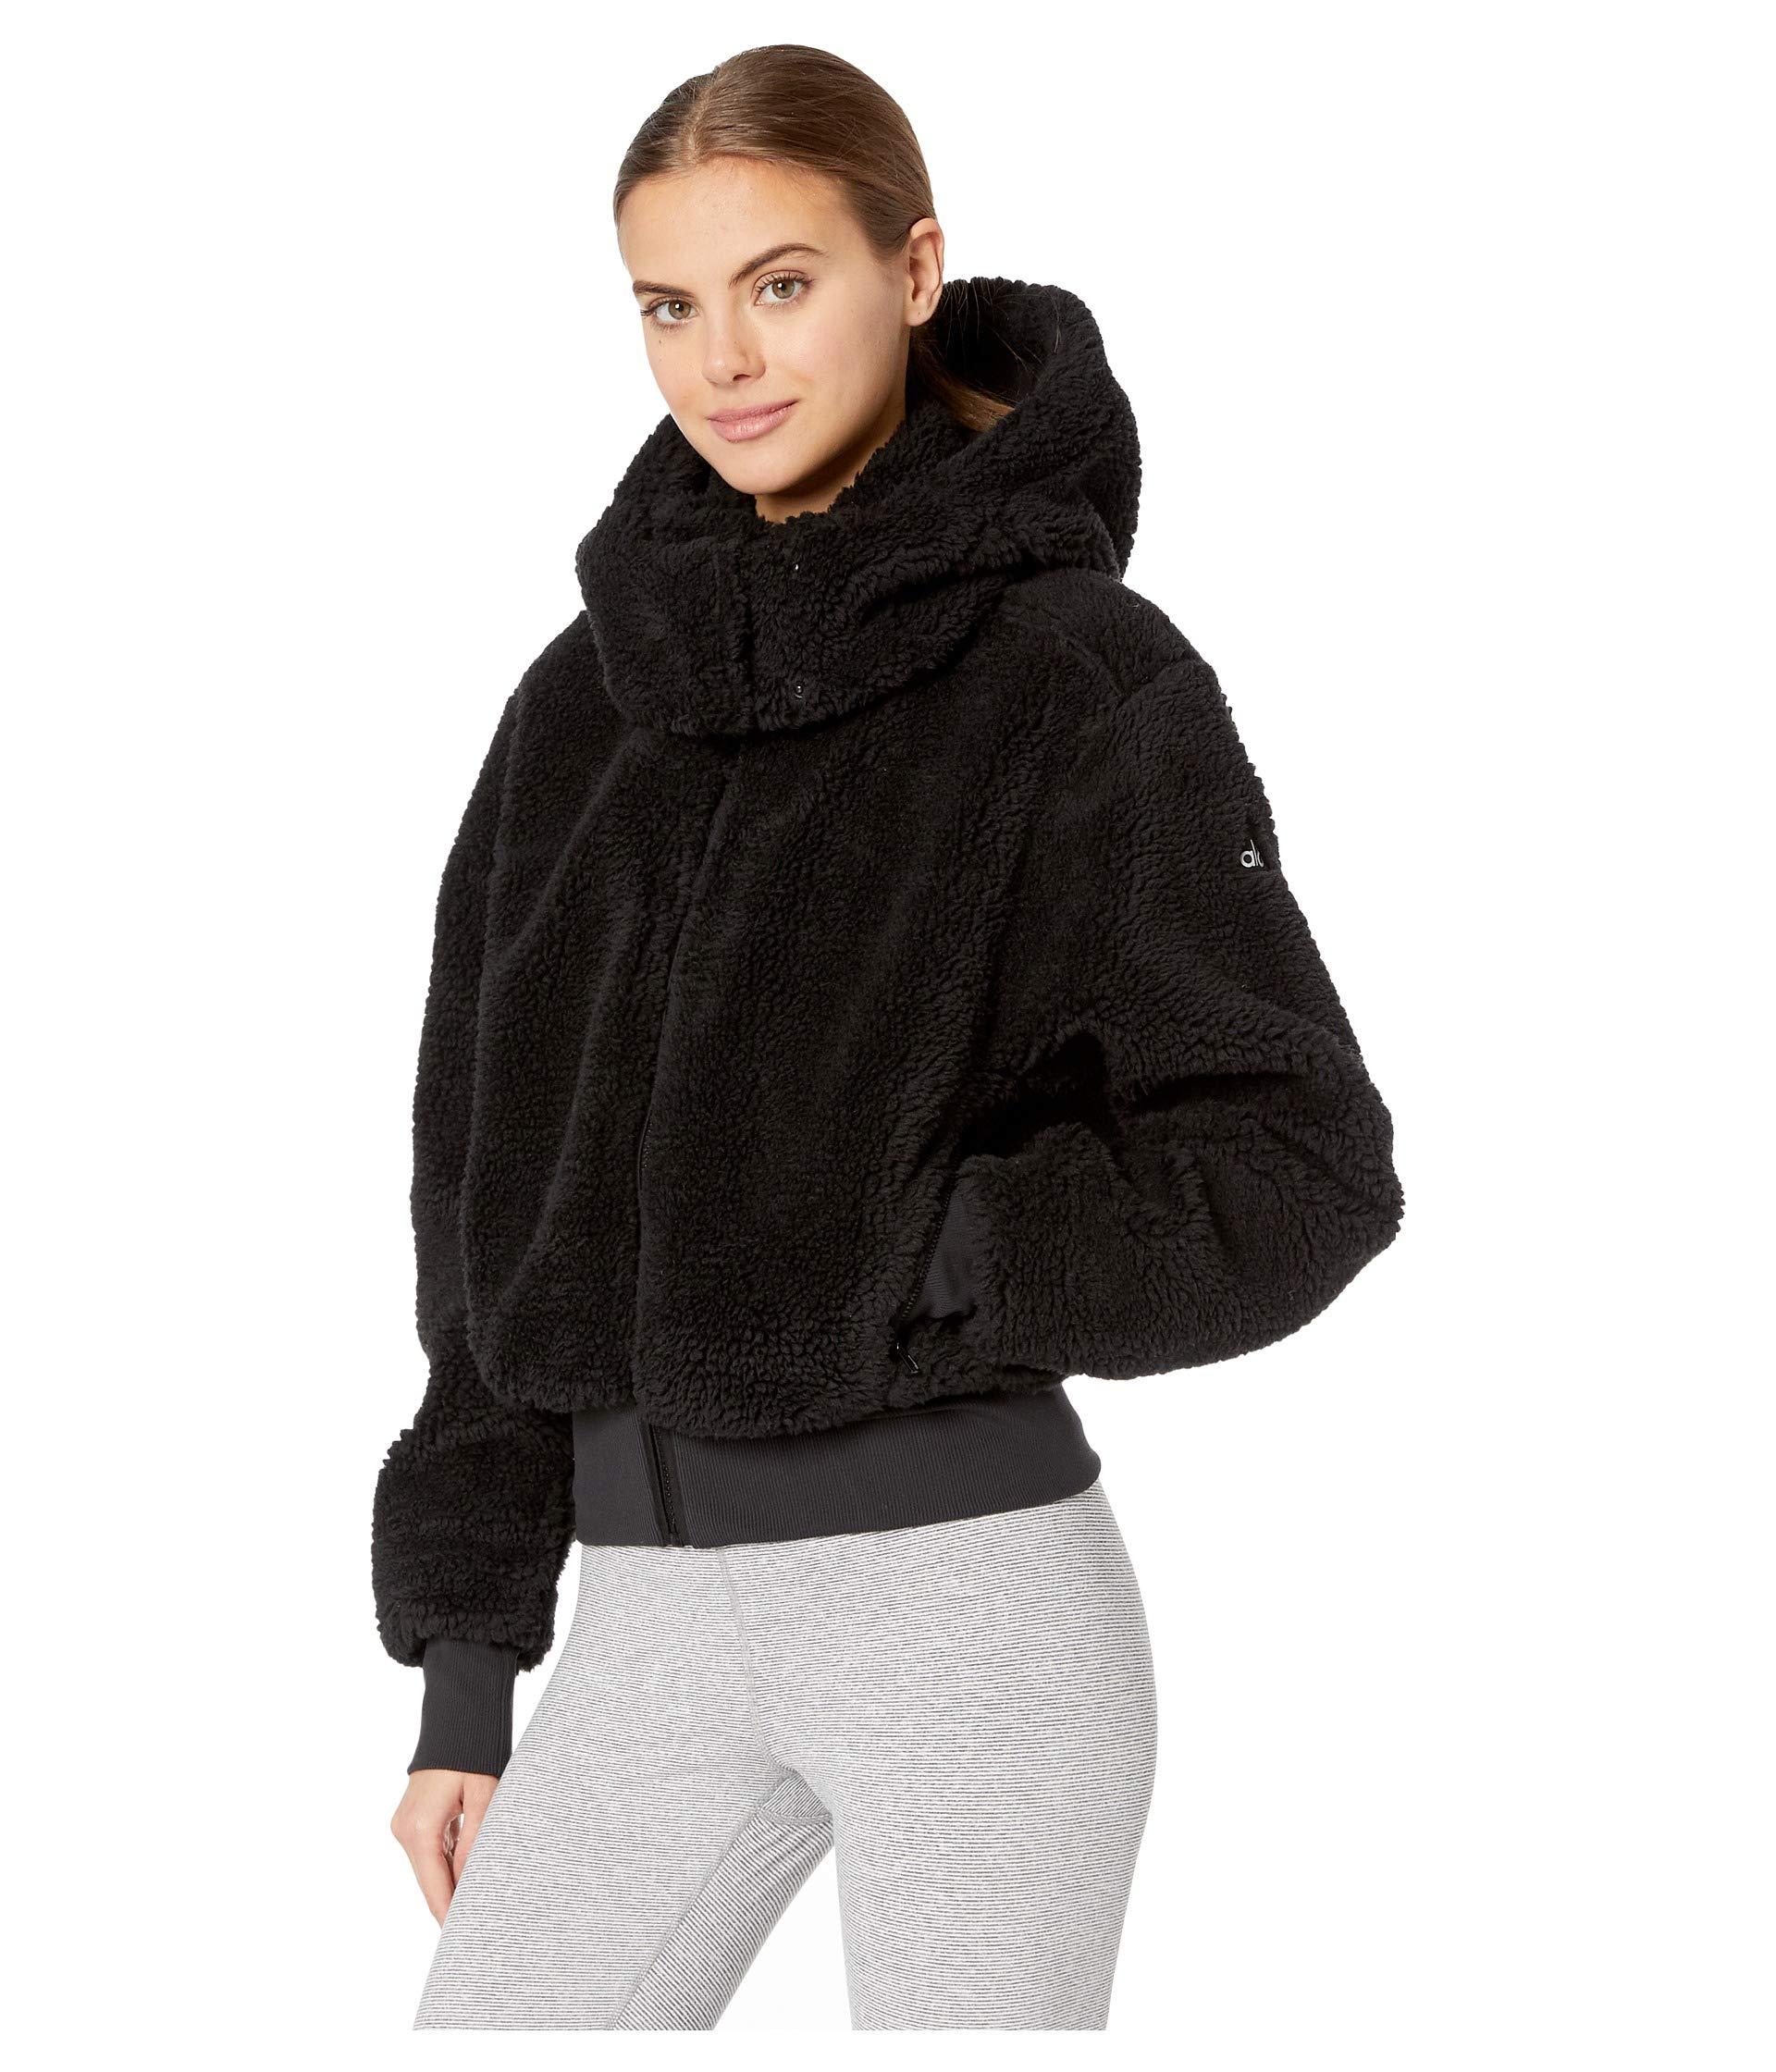 Alo Yoga Synthetic Foxy Sherpa Jacket in Black - Lyst